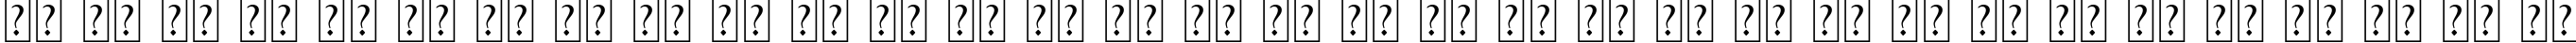 Пример написания русского алфавита шрифтом DuckTales